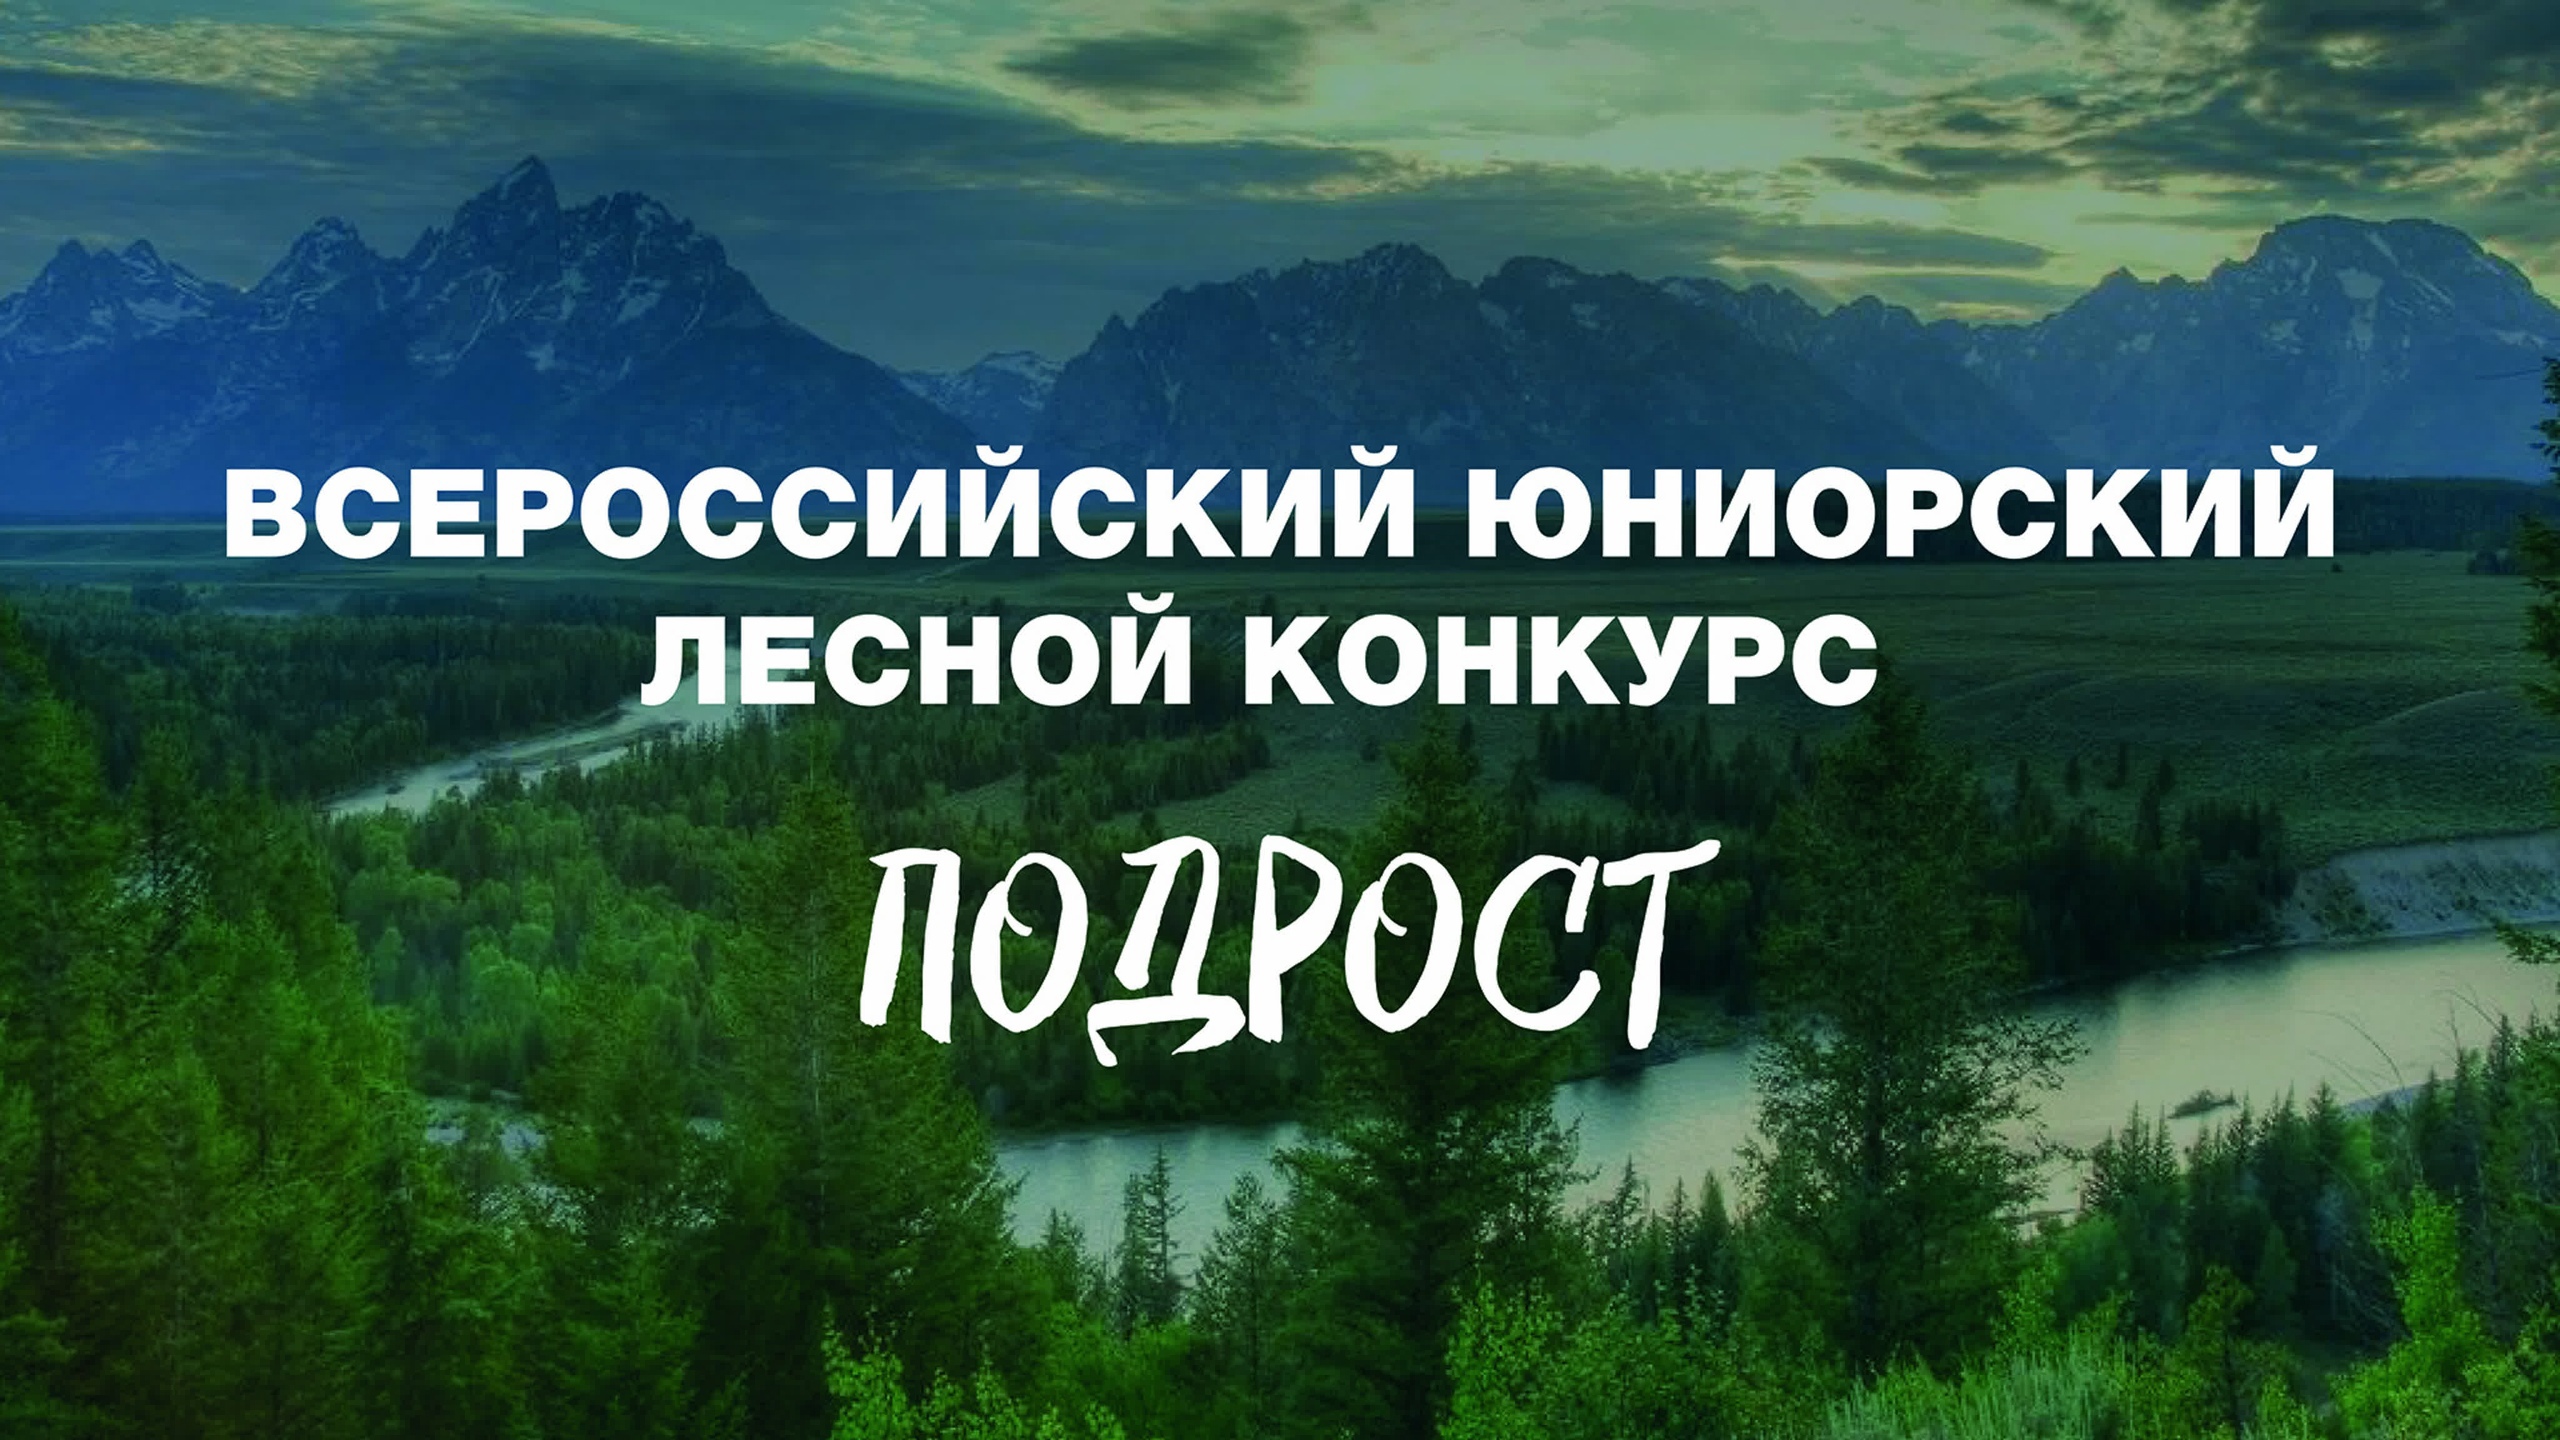 Благодарность  за содействие в организации и проведении Всероссийского юниорского лесного конкурса "Подрост"